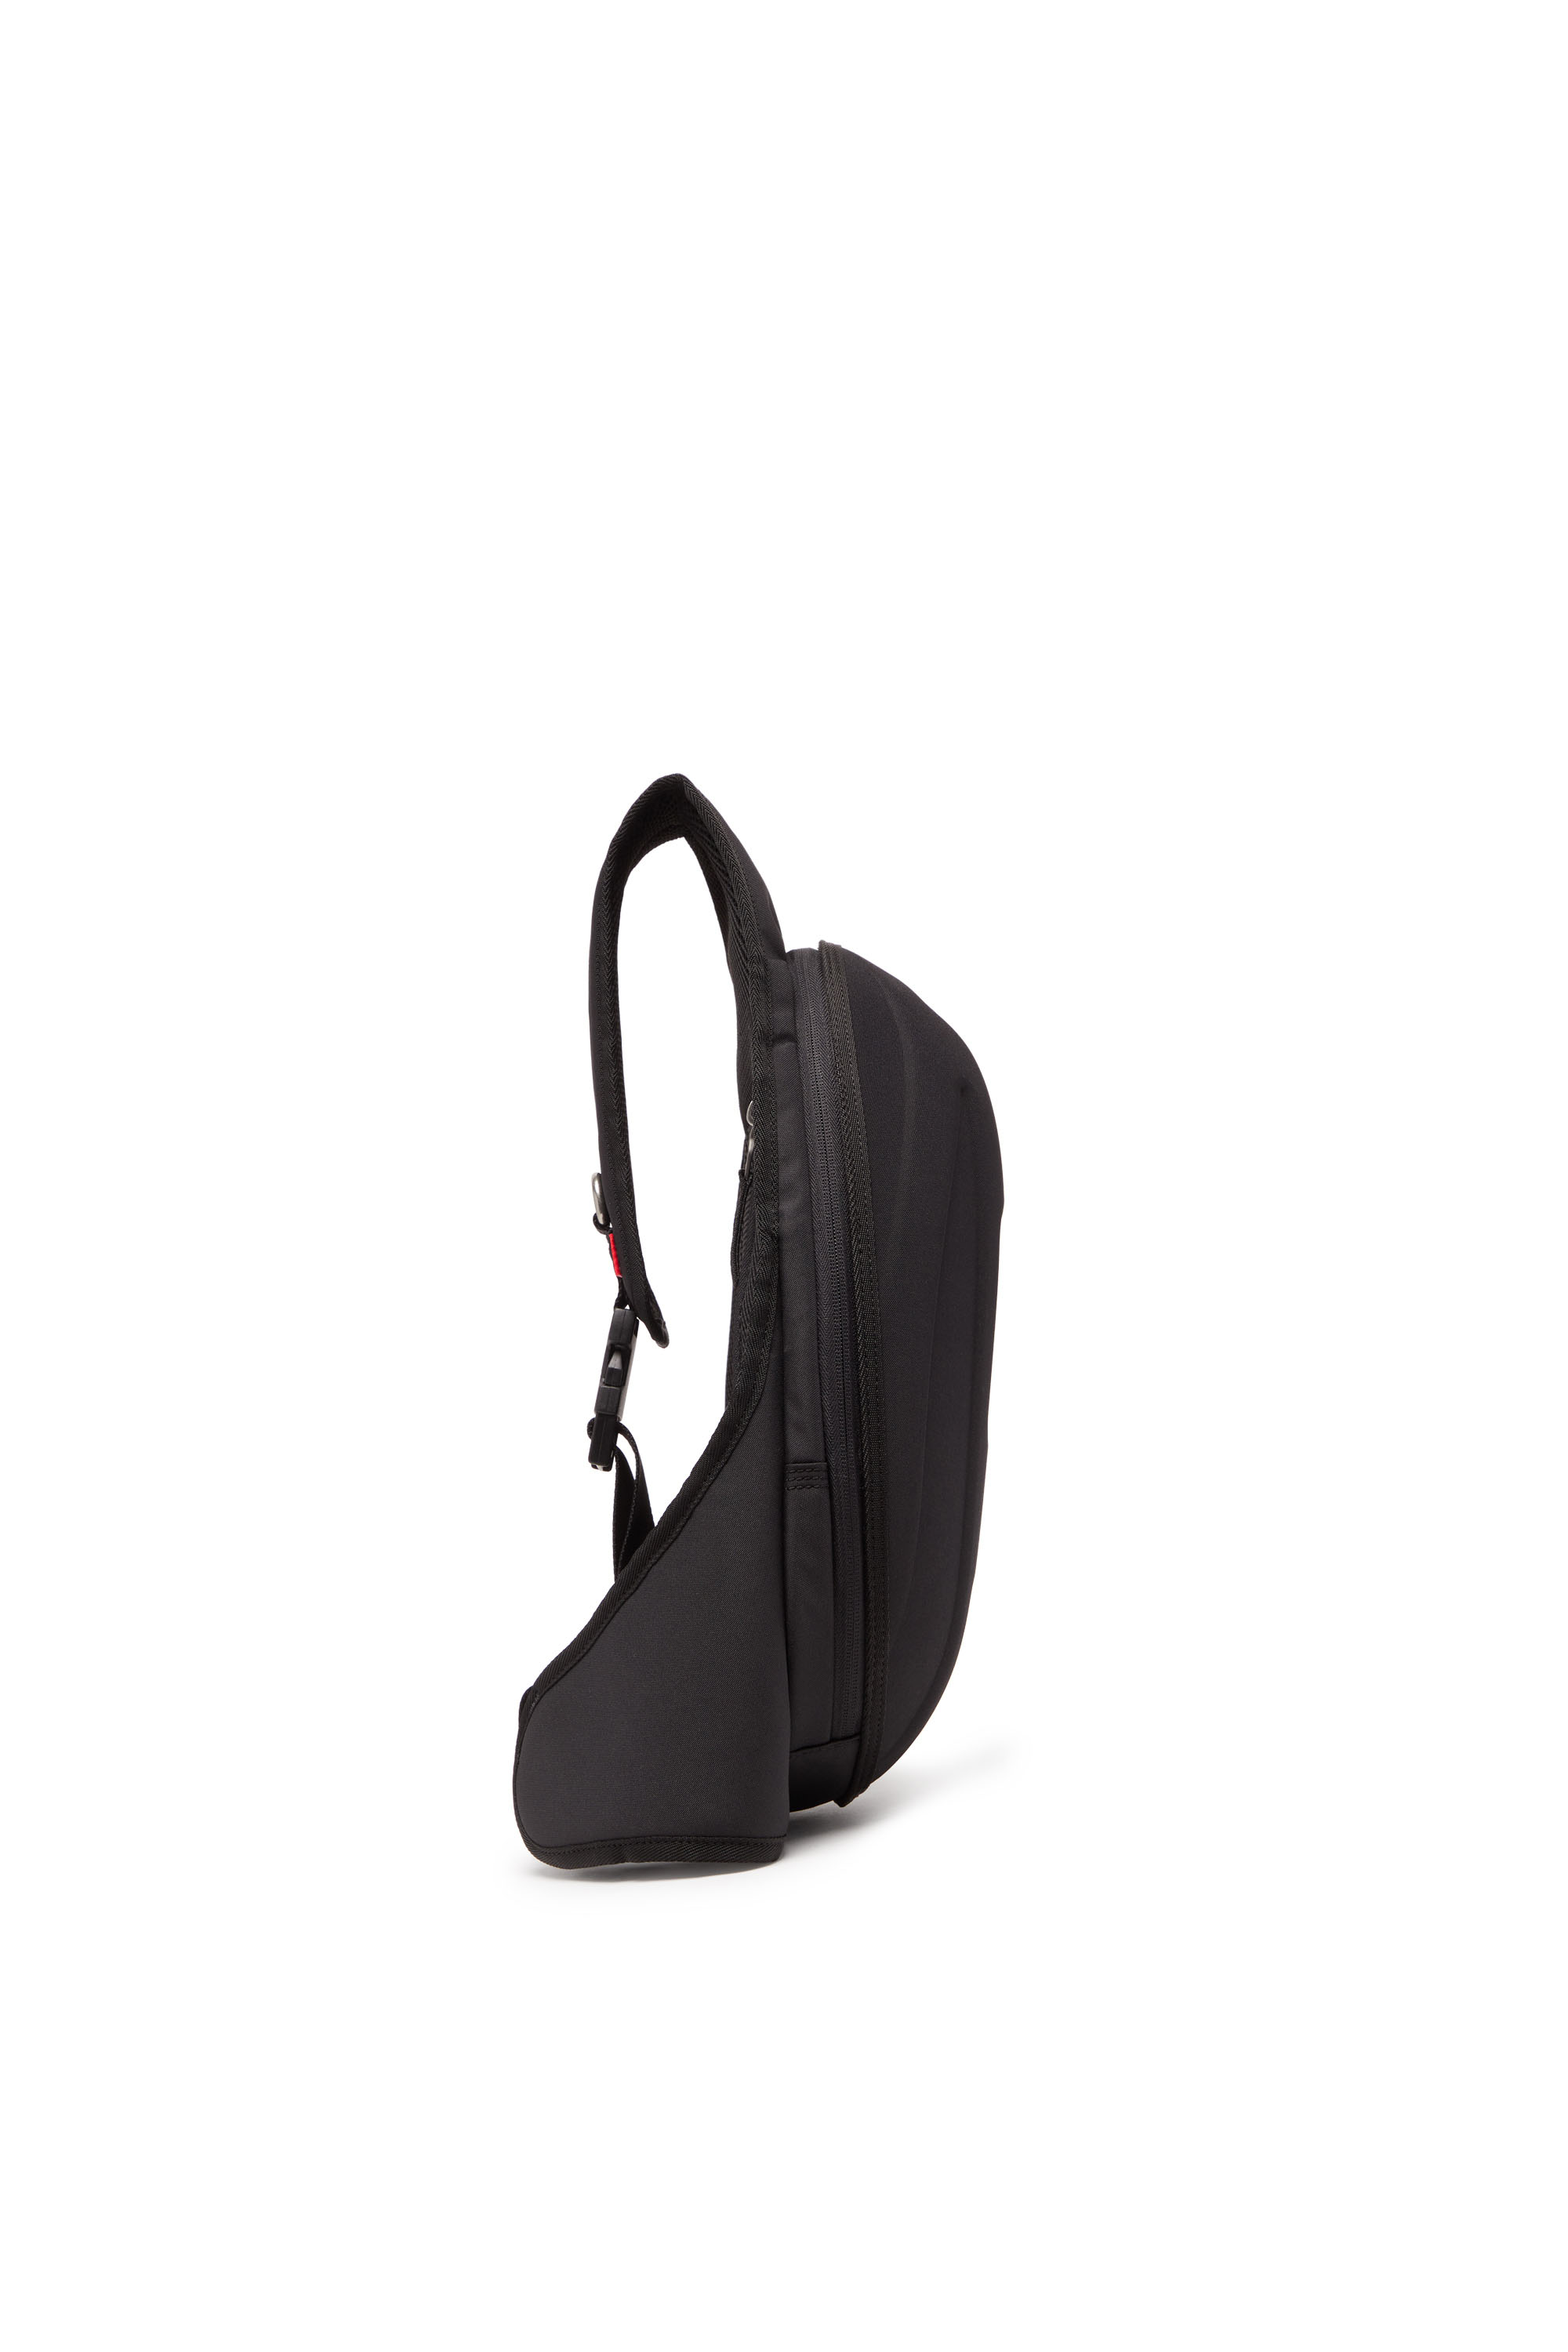 Diesel - 1DR-POD SLING BAG, Man 1DR-Pod Sling Bag - Hard shell sling backpack in Black - Image 3